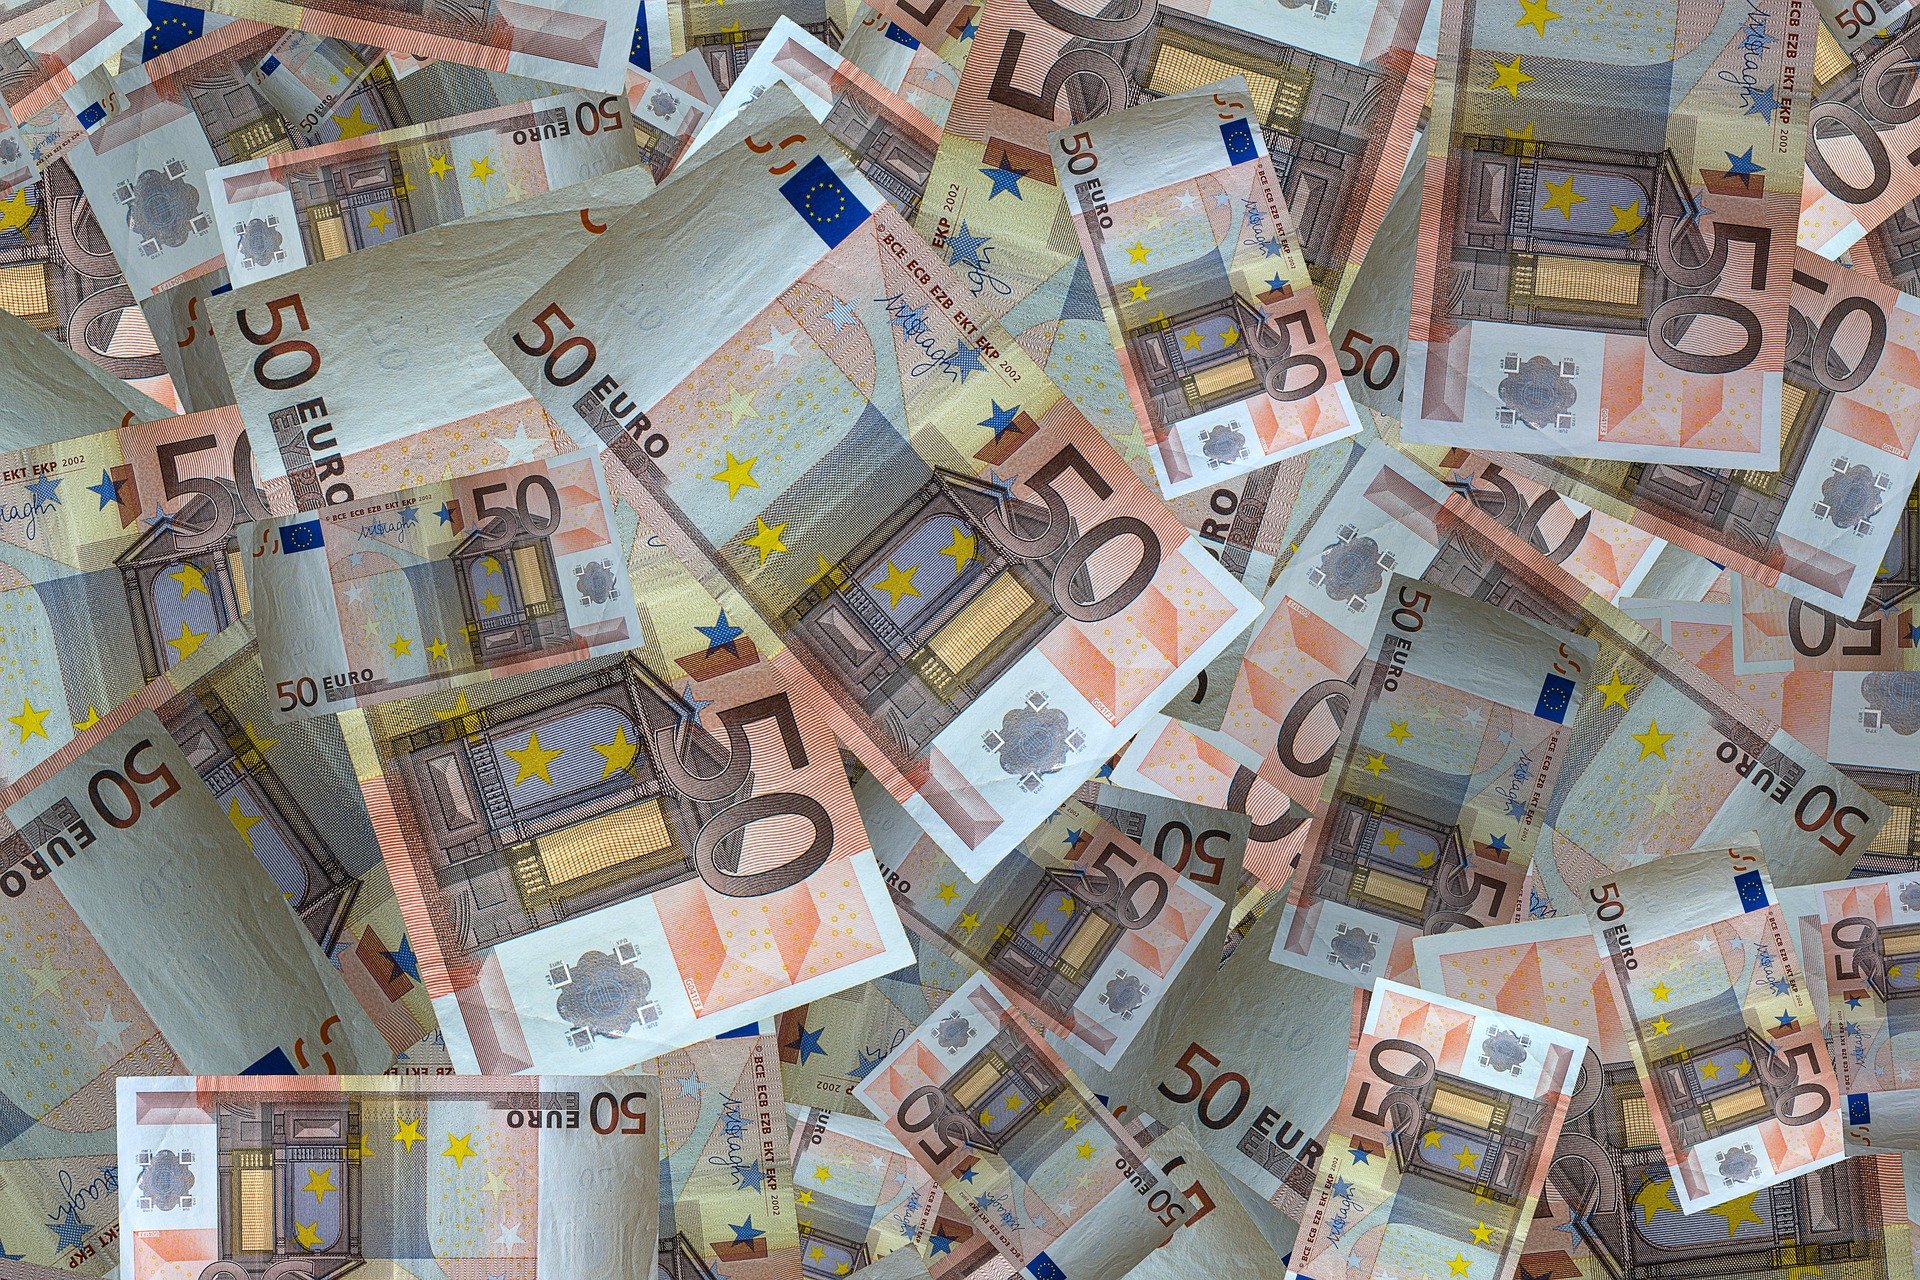 Bitllets de 50 euros en una imatge d'arxiu / PIXABAY